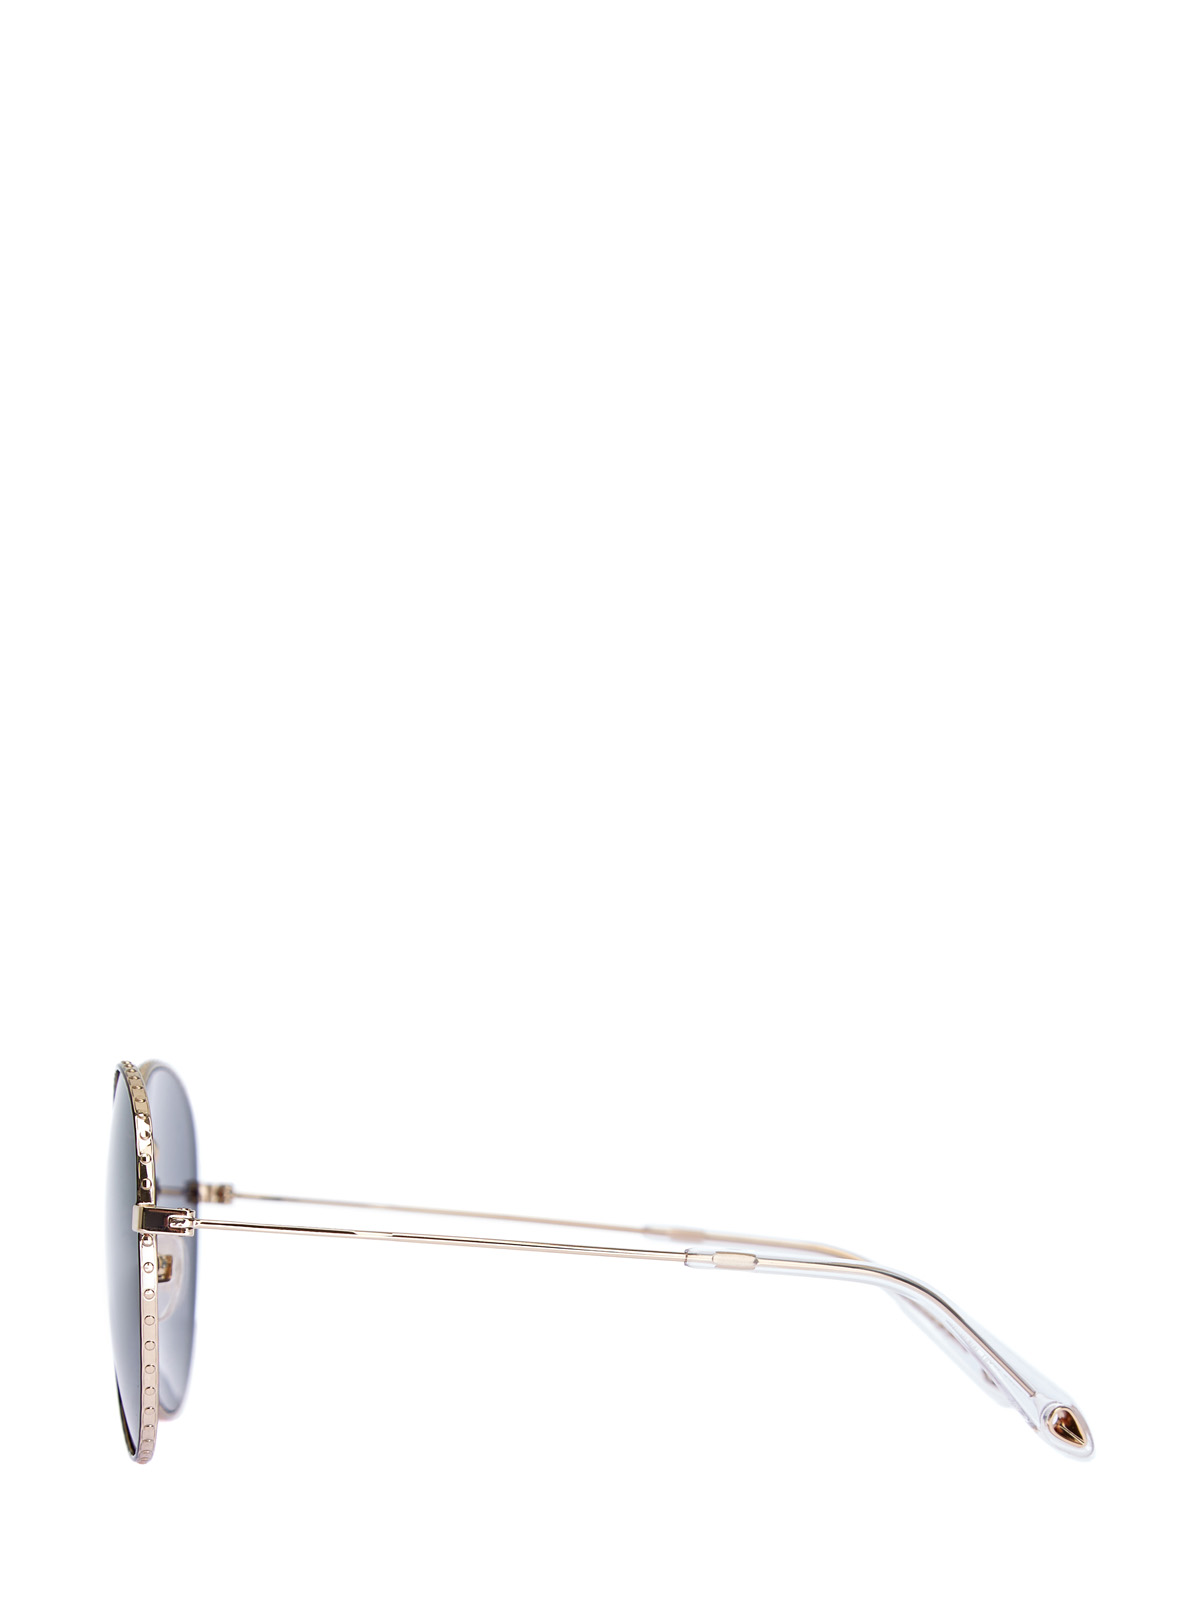 Очки-авиаторы с отделкой из металла золотистого цвета GIVENCHY (sunglasses), размер S;M;L - фото 3